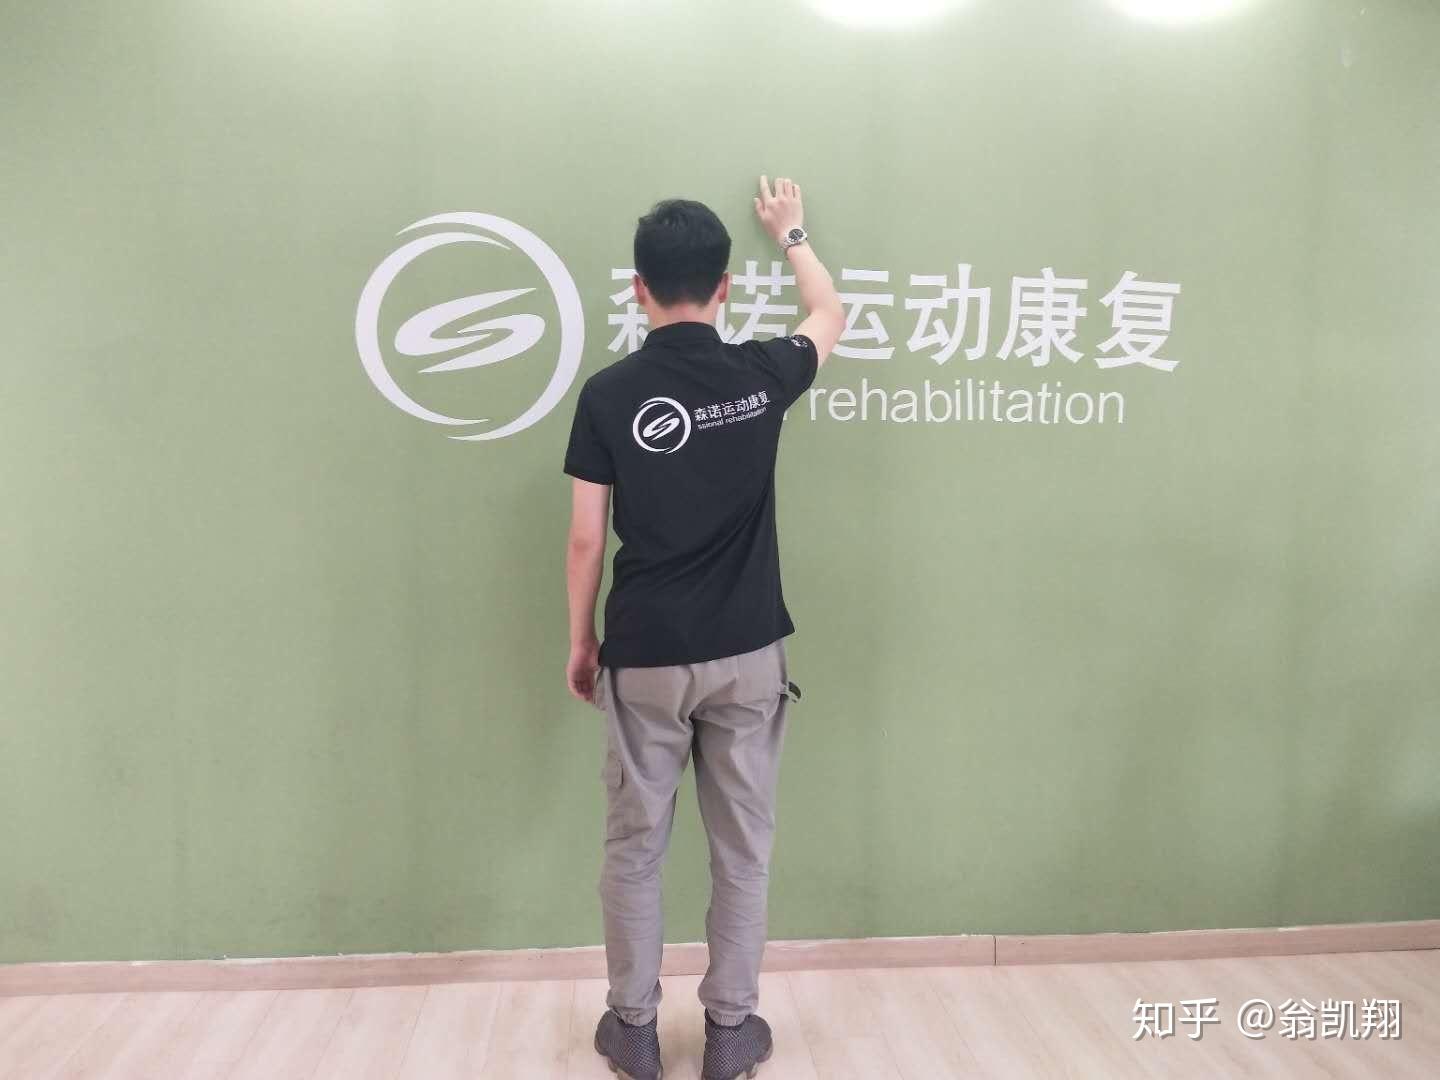 【肩周炎】一个月从无法抬臂到行动自如 - 南京唯宝医疗科技有限公司